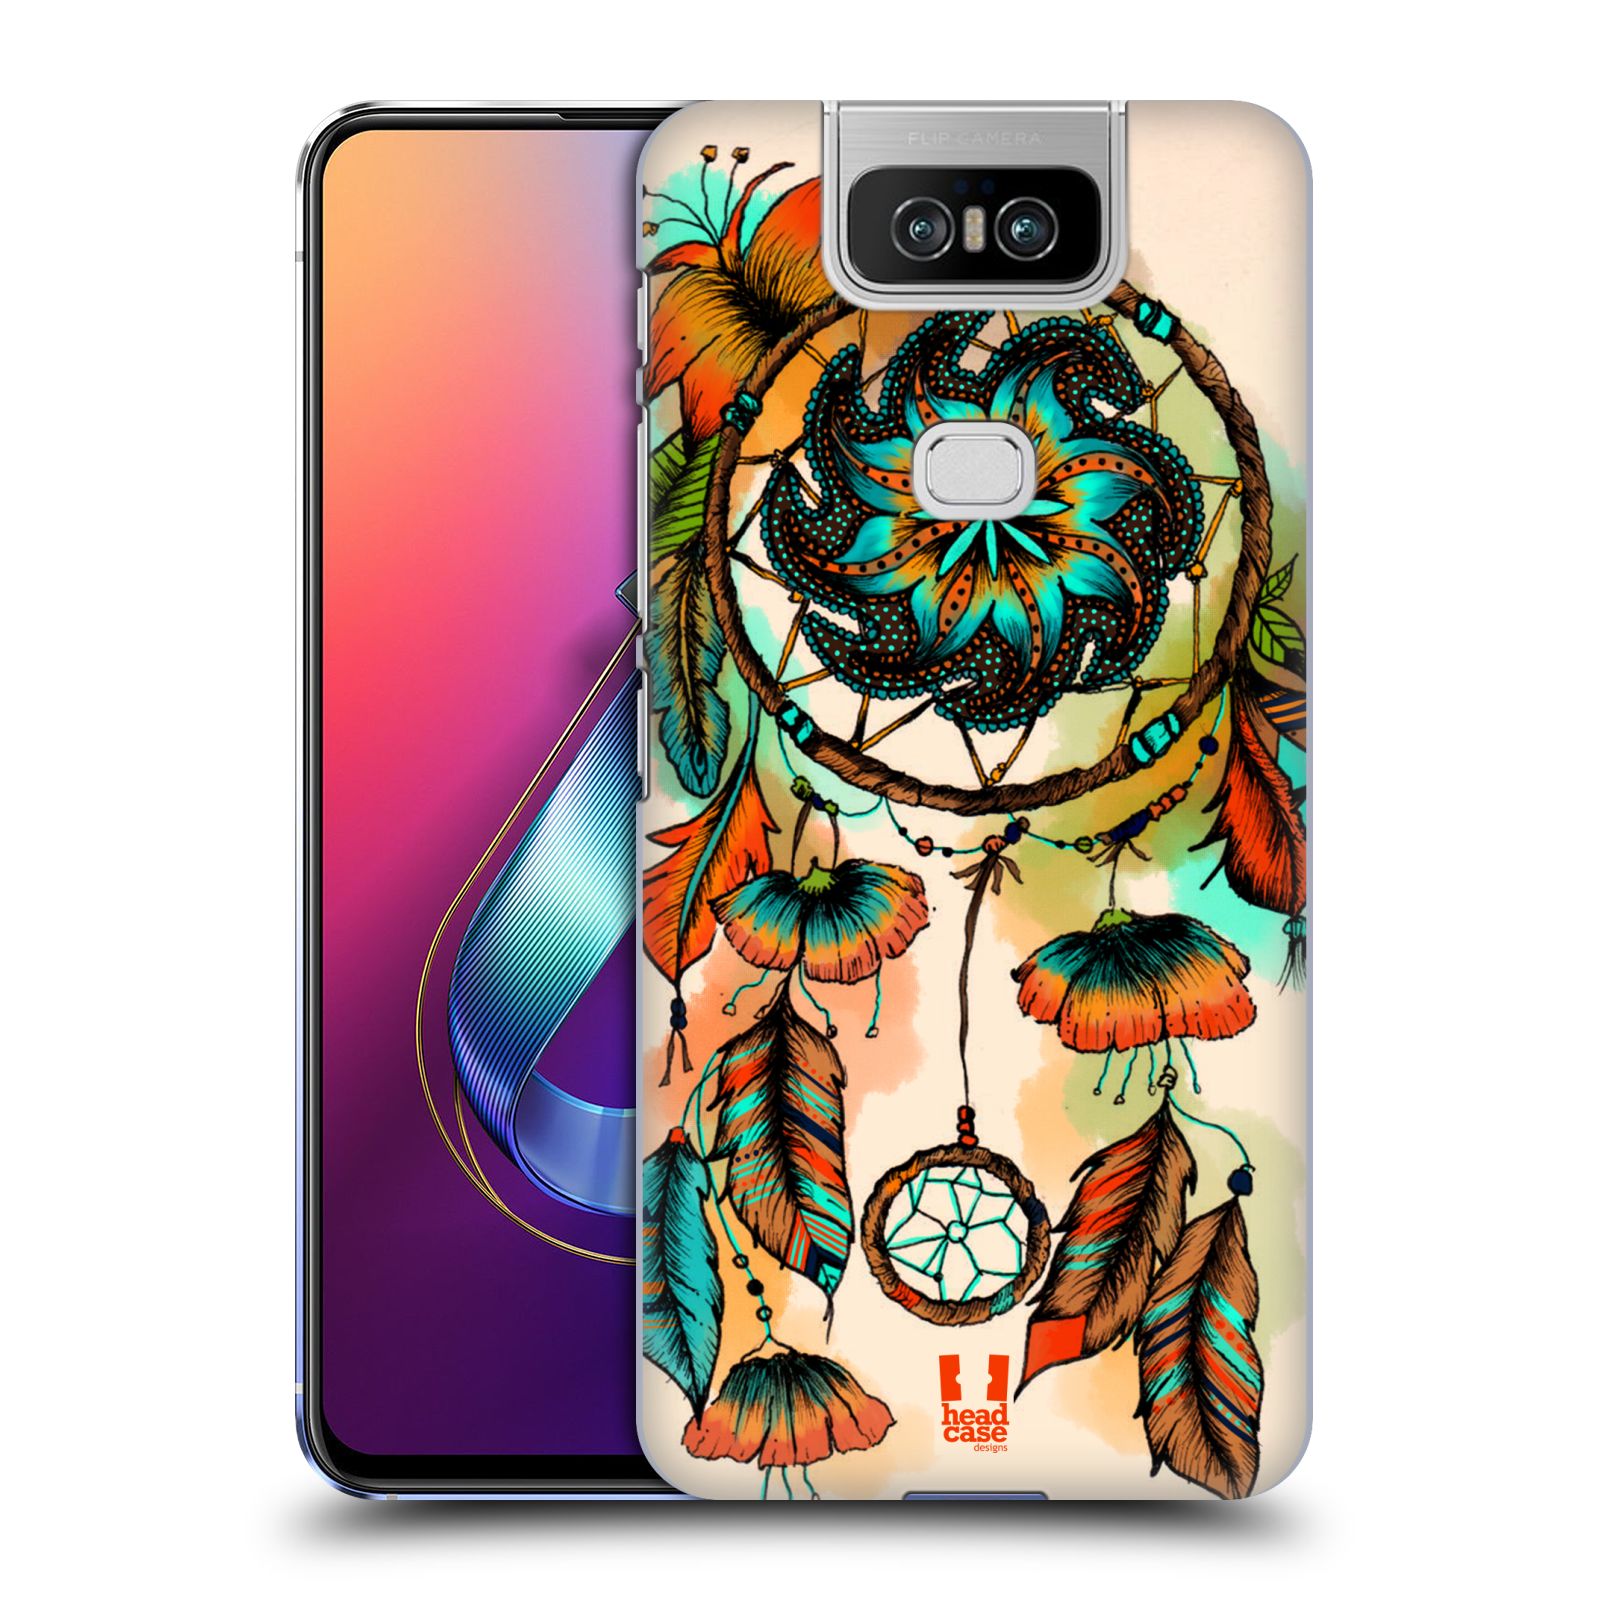 Pouzdro na mobil Asus Zenfone 6 ZS630KL - HEAD CASE - vzor Květy lapač snů merňka oranžová